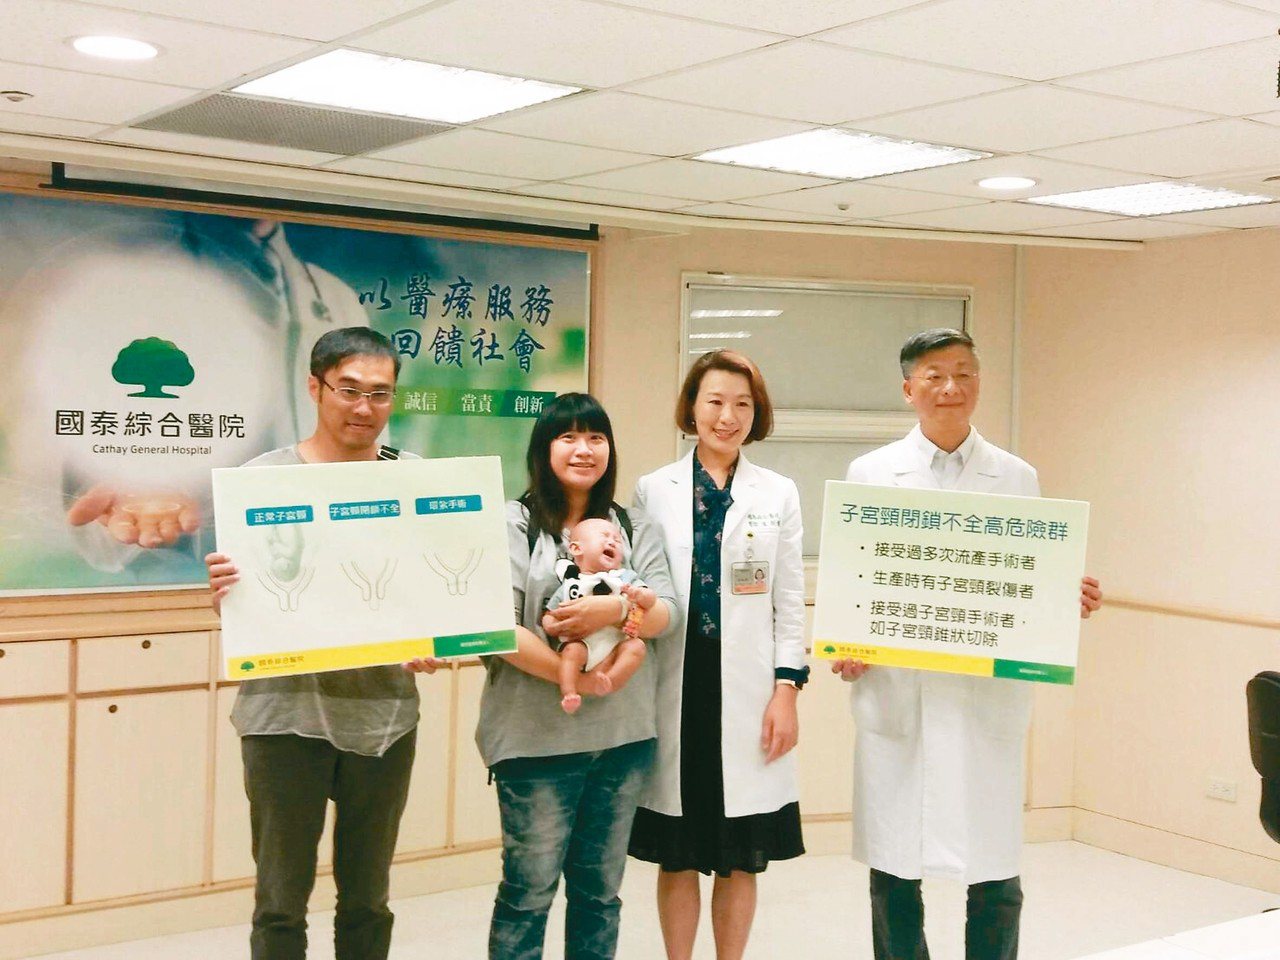 國泰醫院婦產科主任蔡明松(右起)、主治醫師陳俐瑾與產婦林小姐全家福合影。